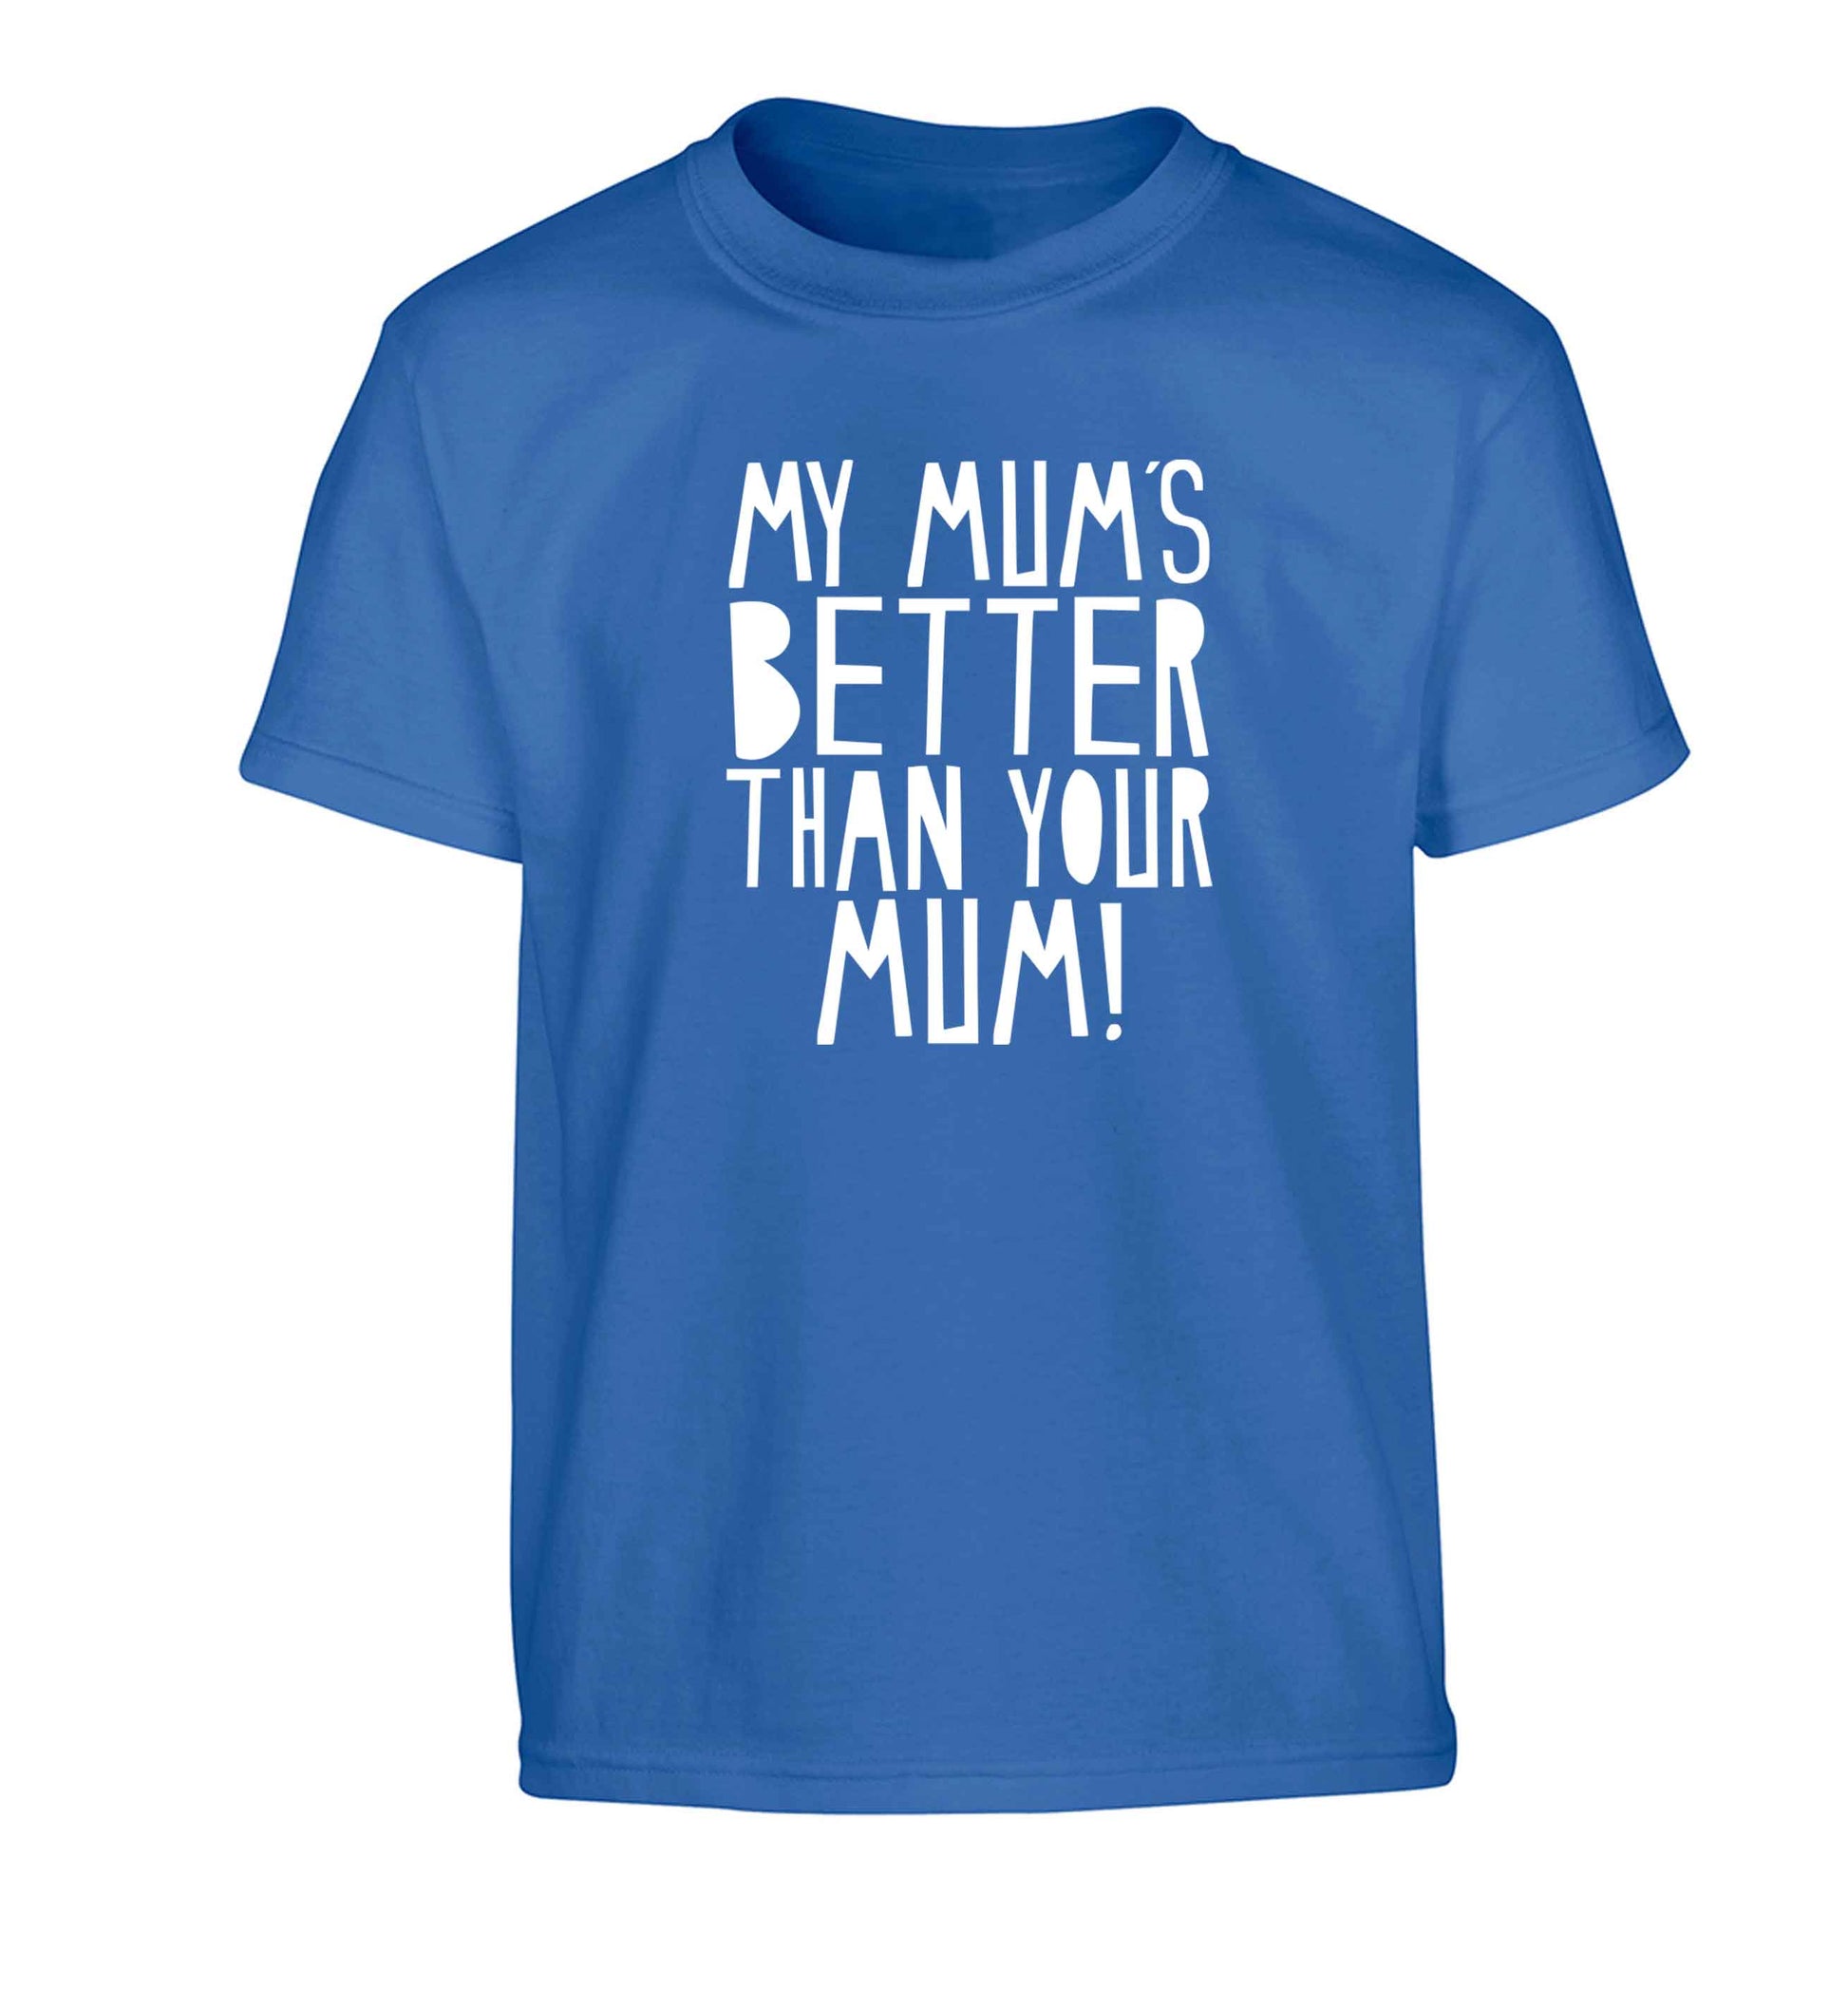 My mum's better than your mum Children's blue Tshirt 12-13 Years